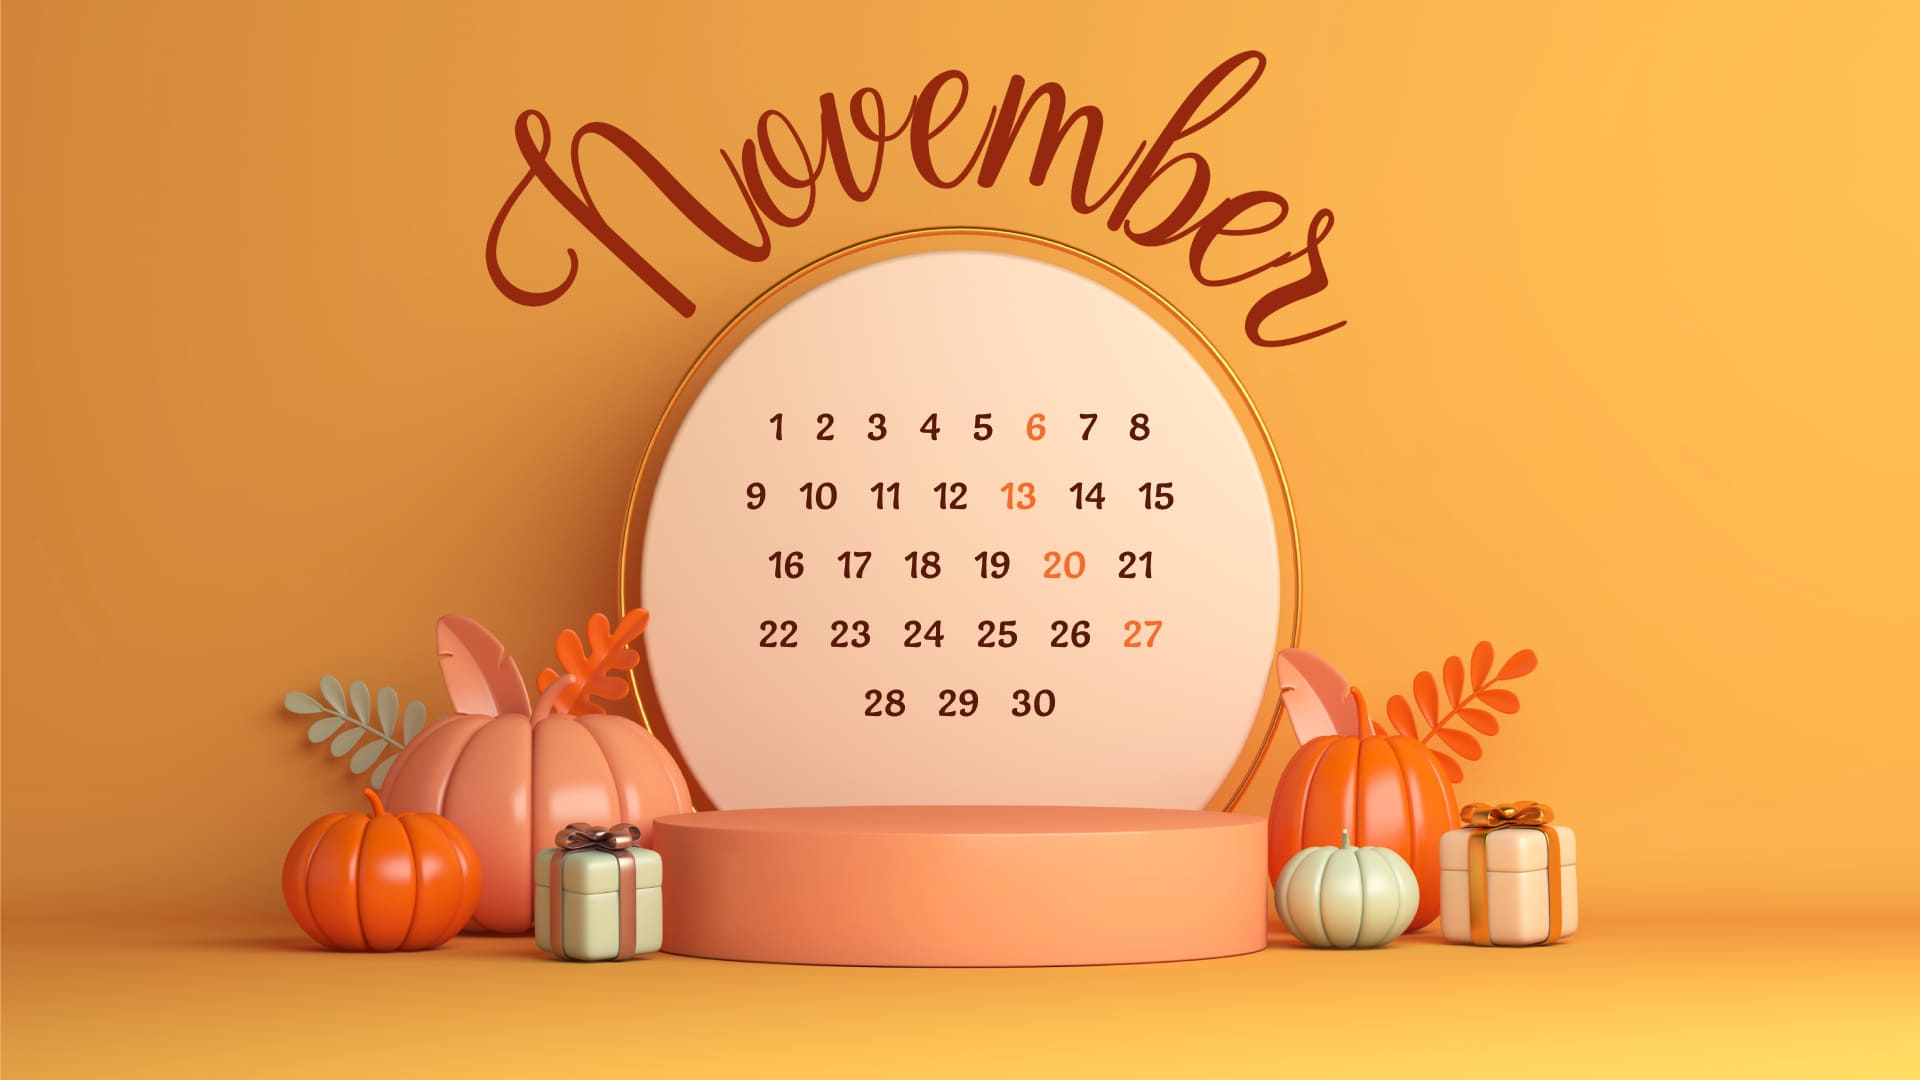 Free November calendar extension 1920х1080.